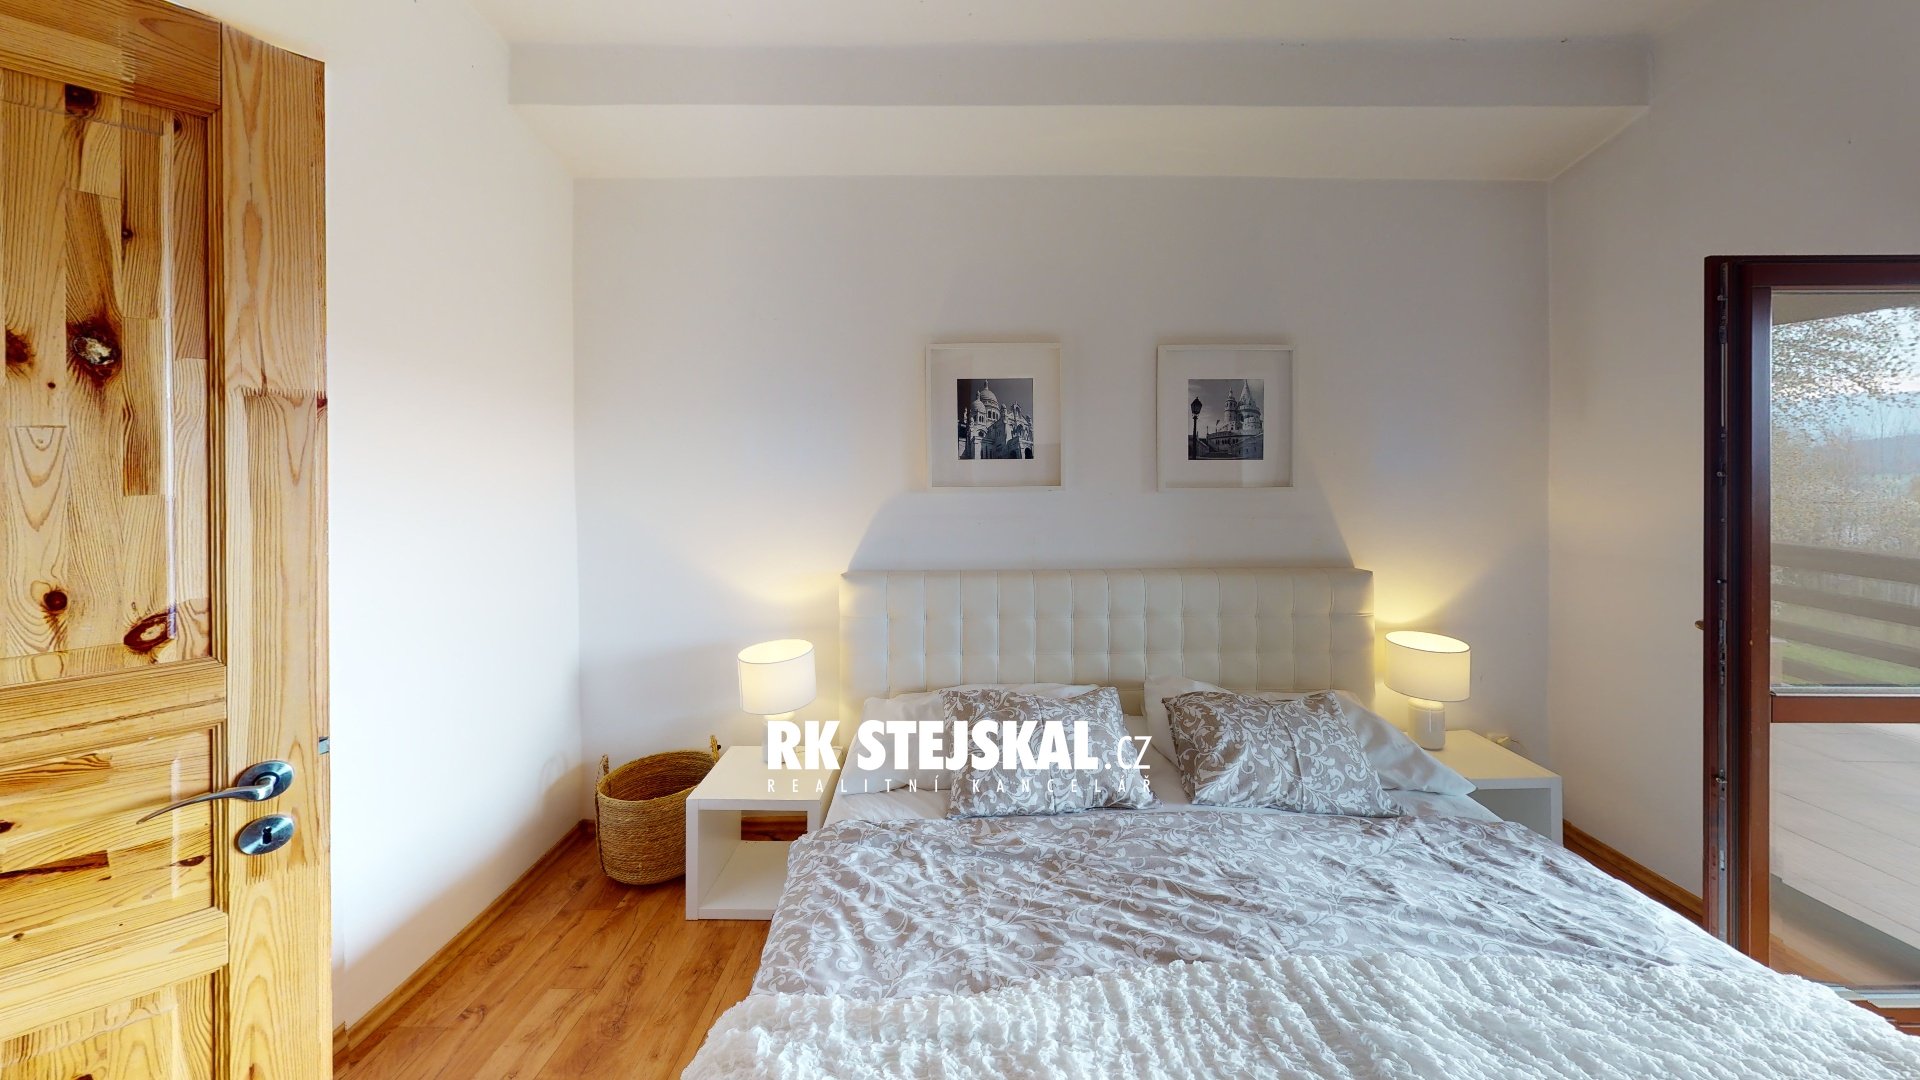 Apartmany-Horni-Plana-Bedroom(1)